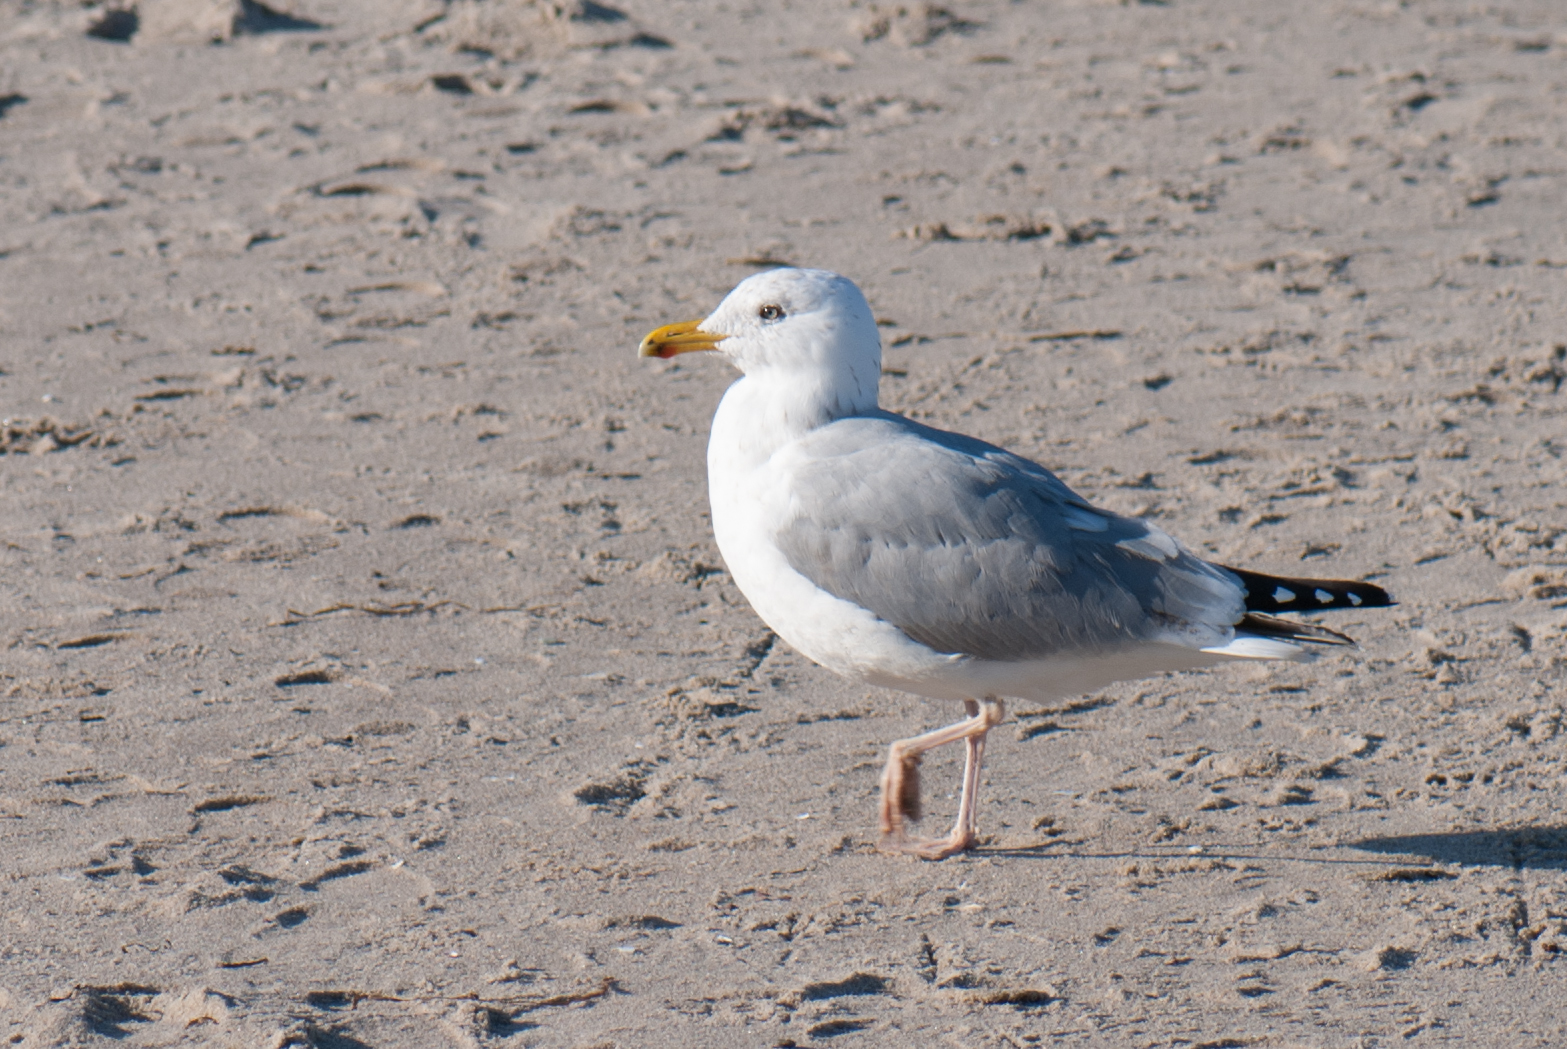 a white bird standing on a sandy beach